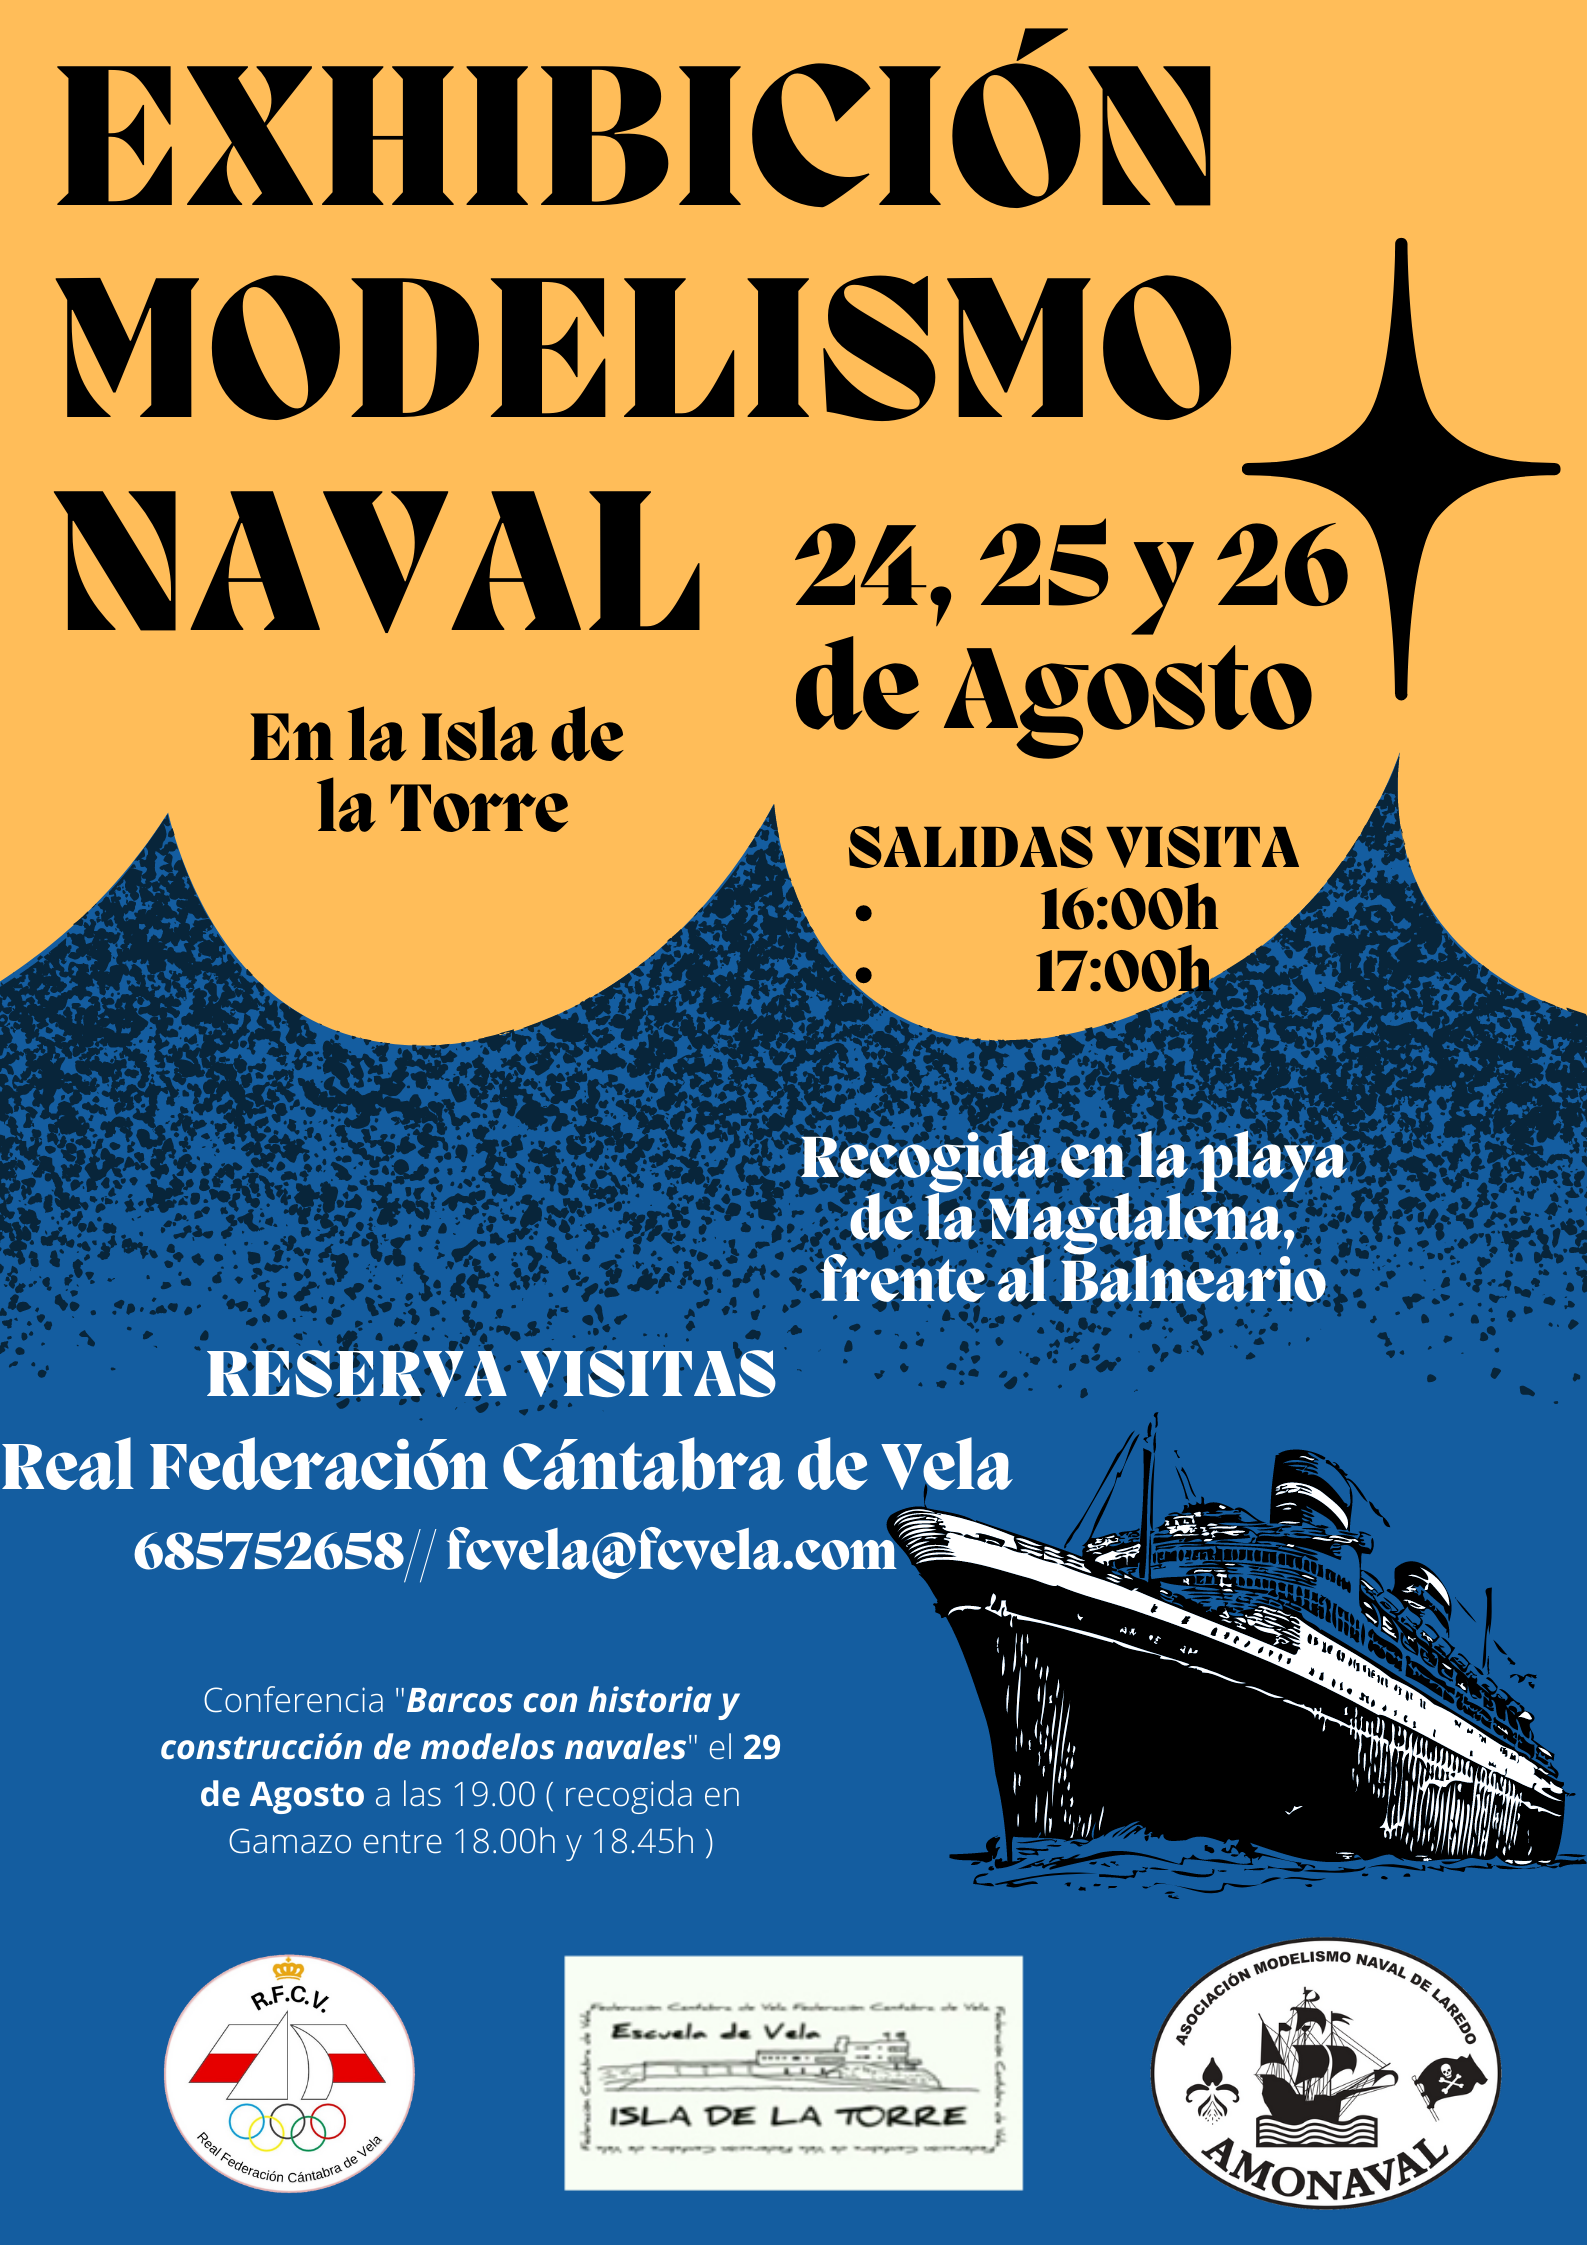 Exhibición de modelismo naval - Santander Creativa